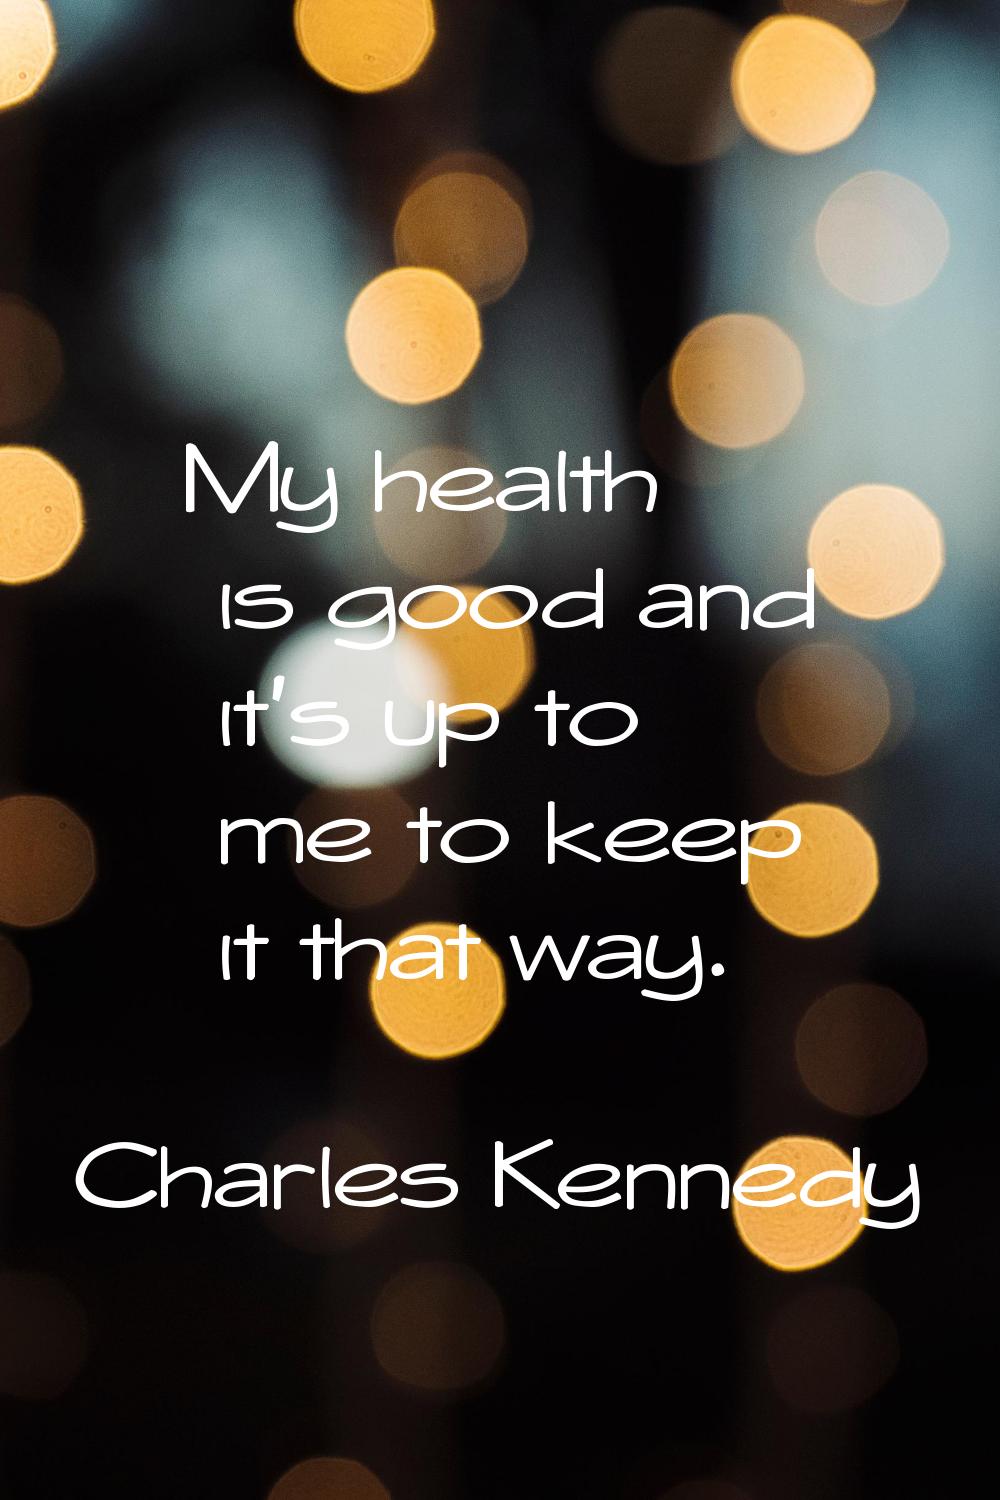 My health is good and it's up to me to keep it that way.